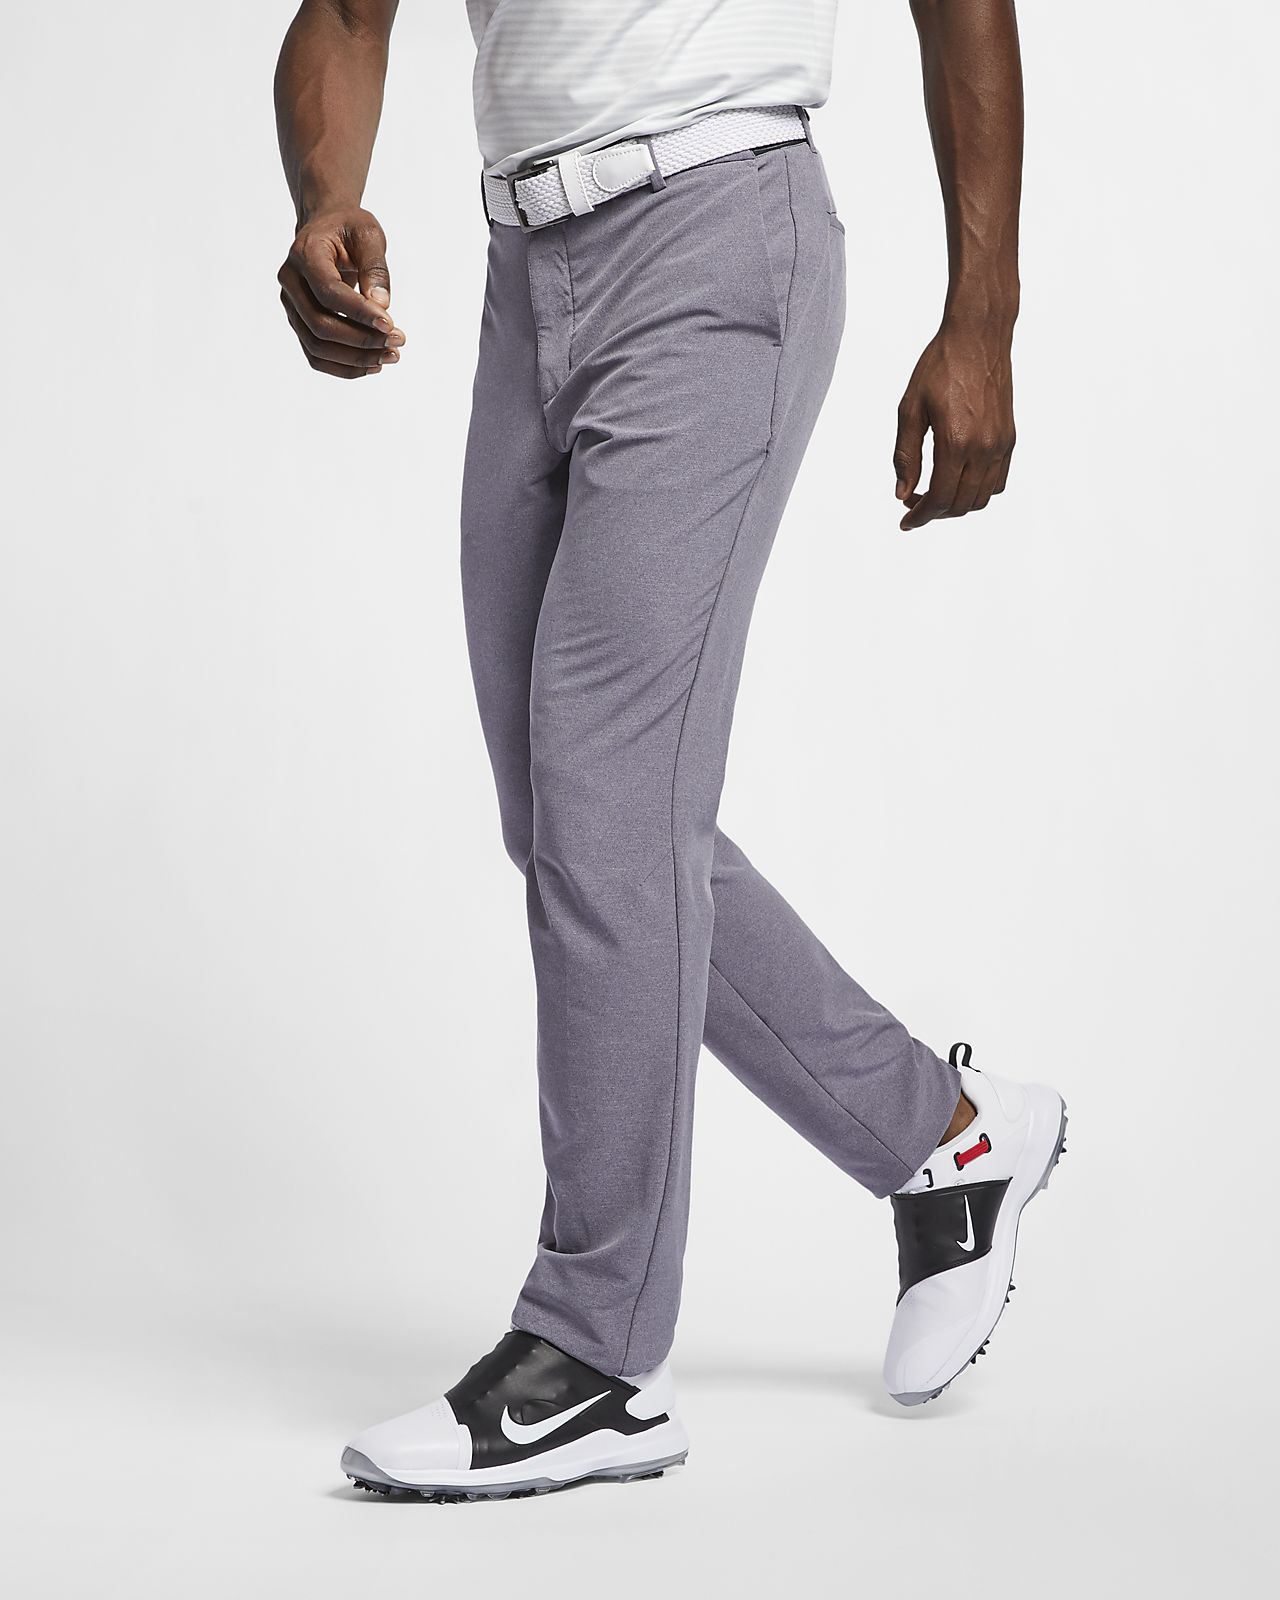 Buy > nike slim flex golf pants > in stock